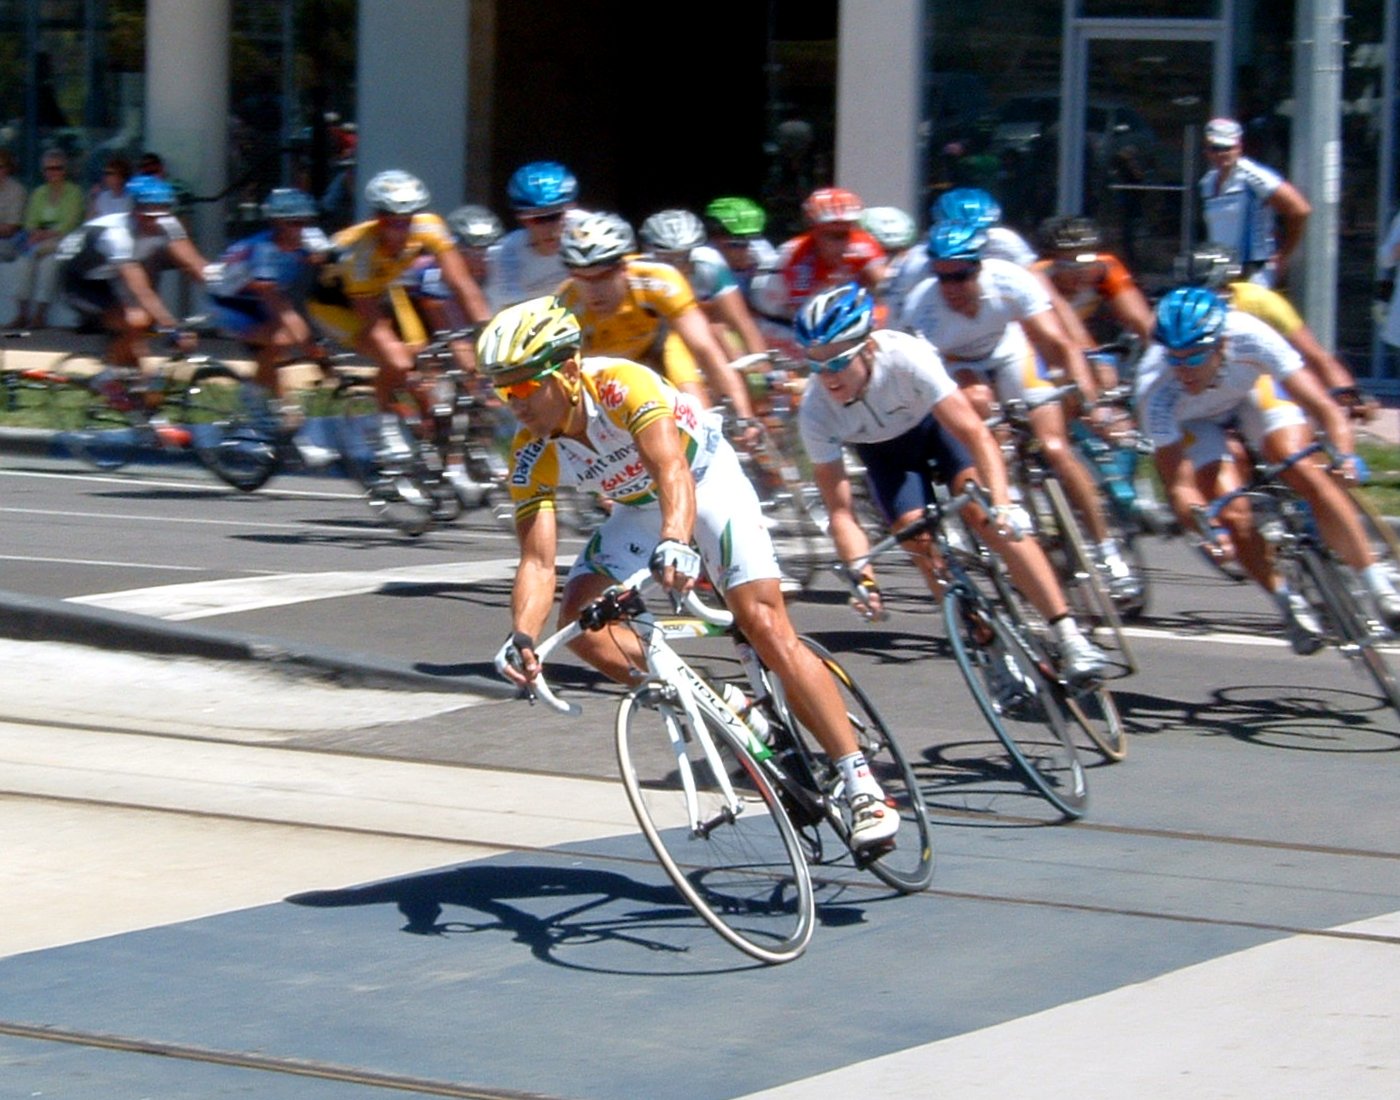 Tour de France comes to Australia